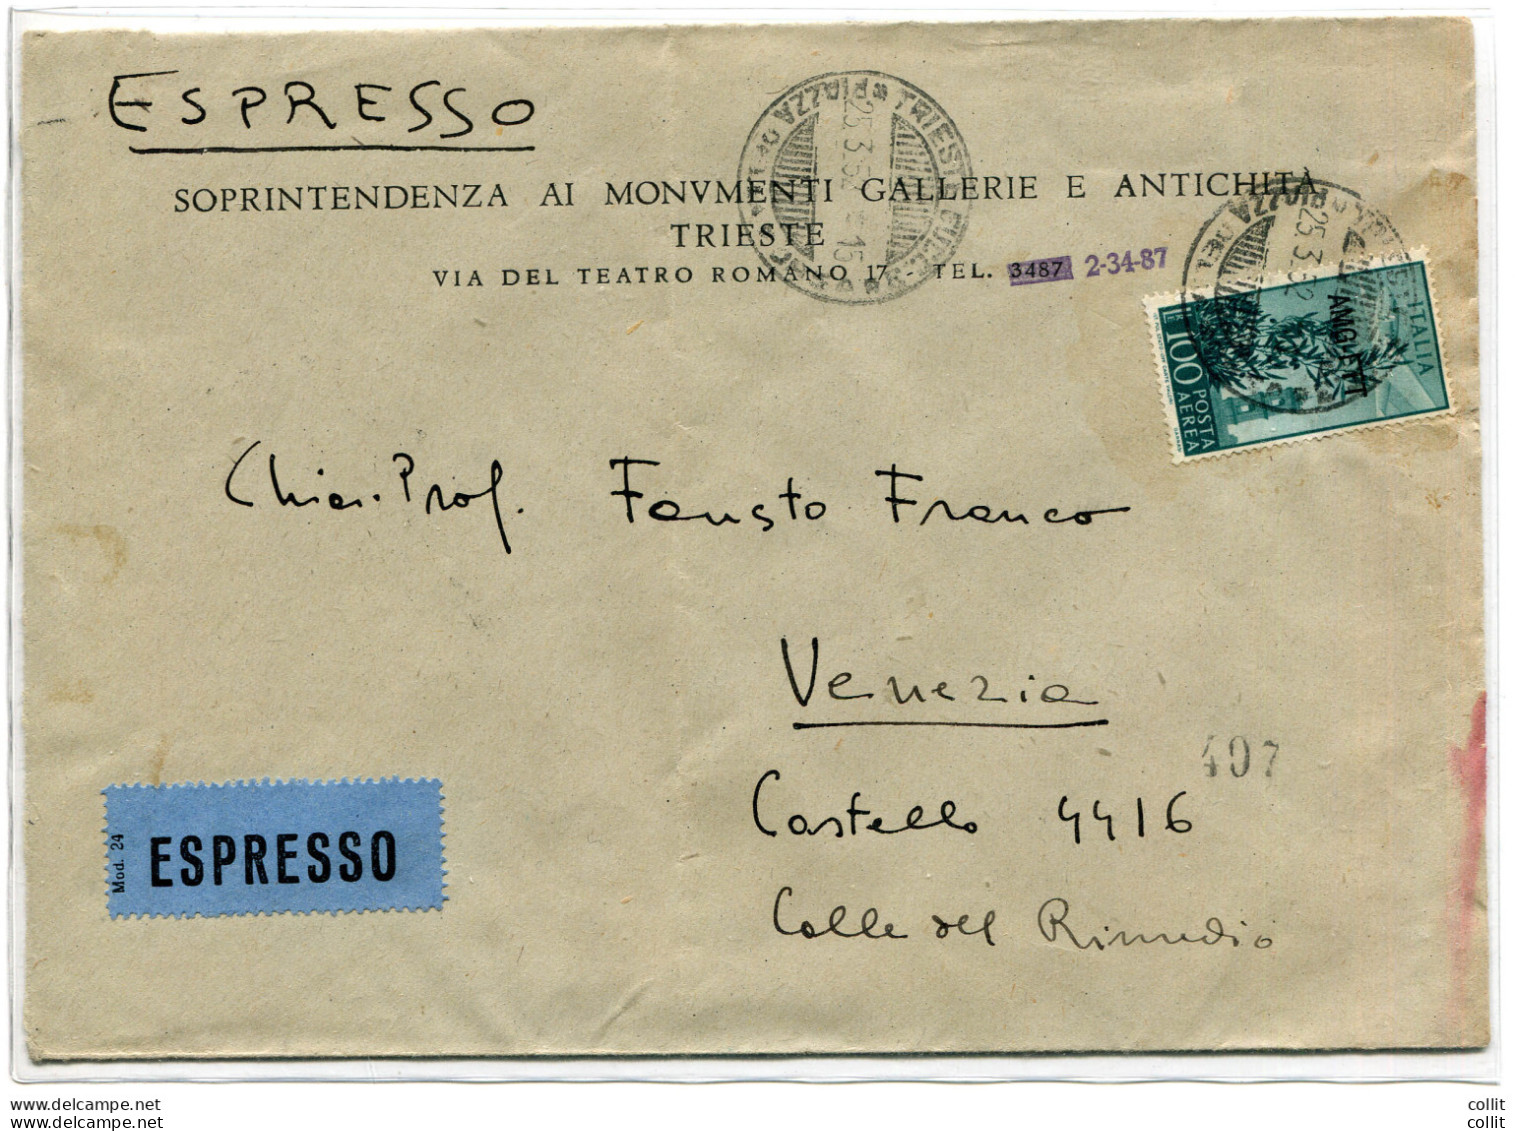 Trieste A Lire 100 Campidoglio Isolato Su Espresso - Mint/hinged